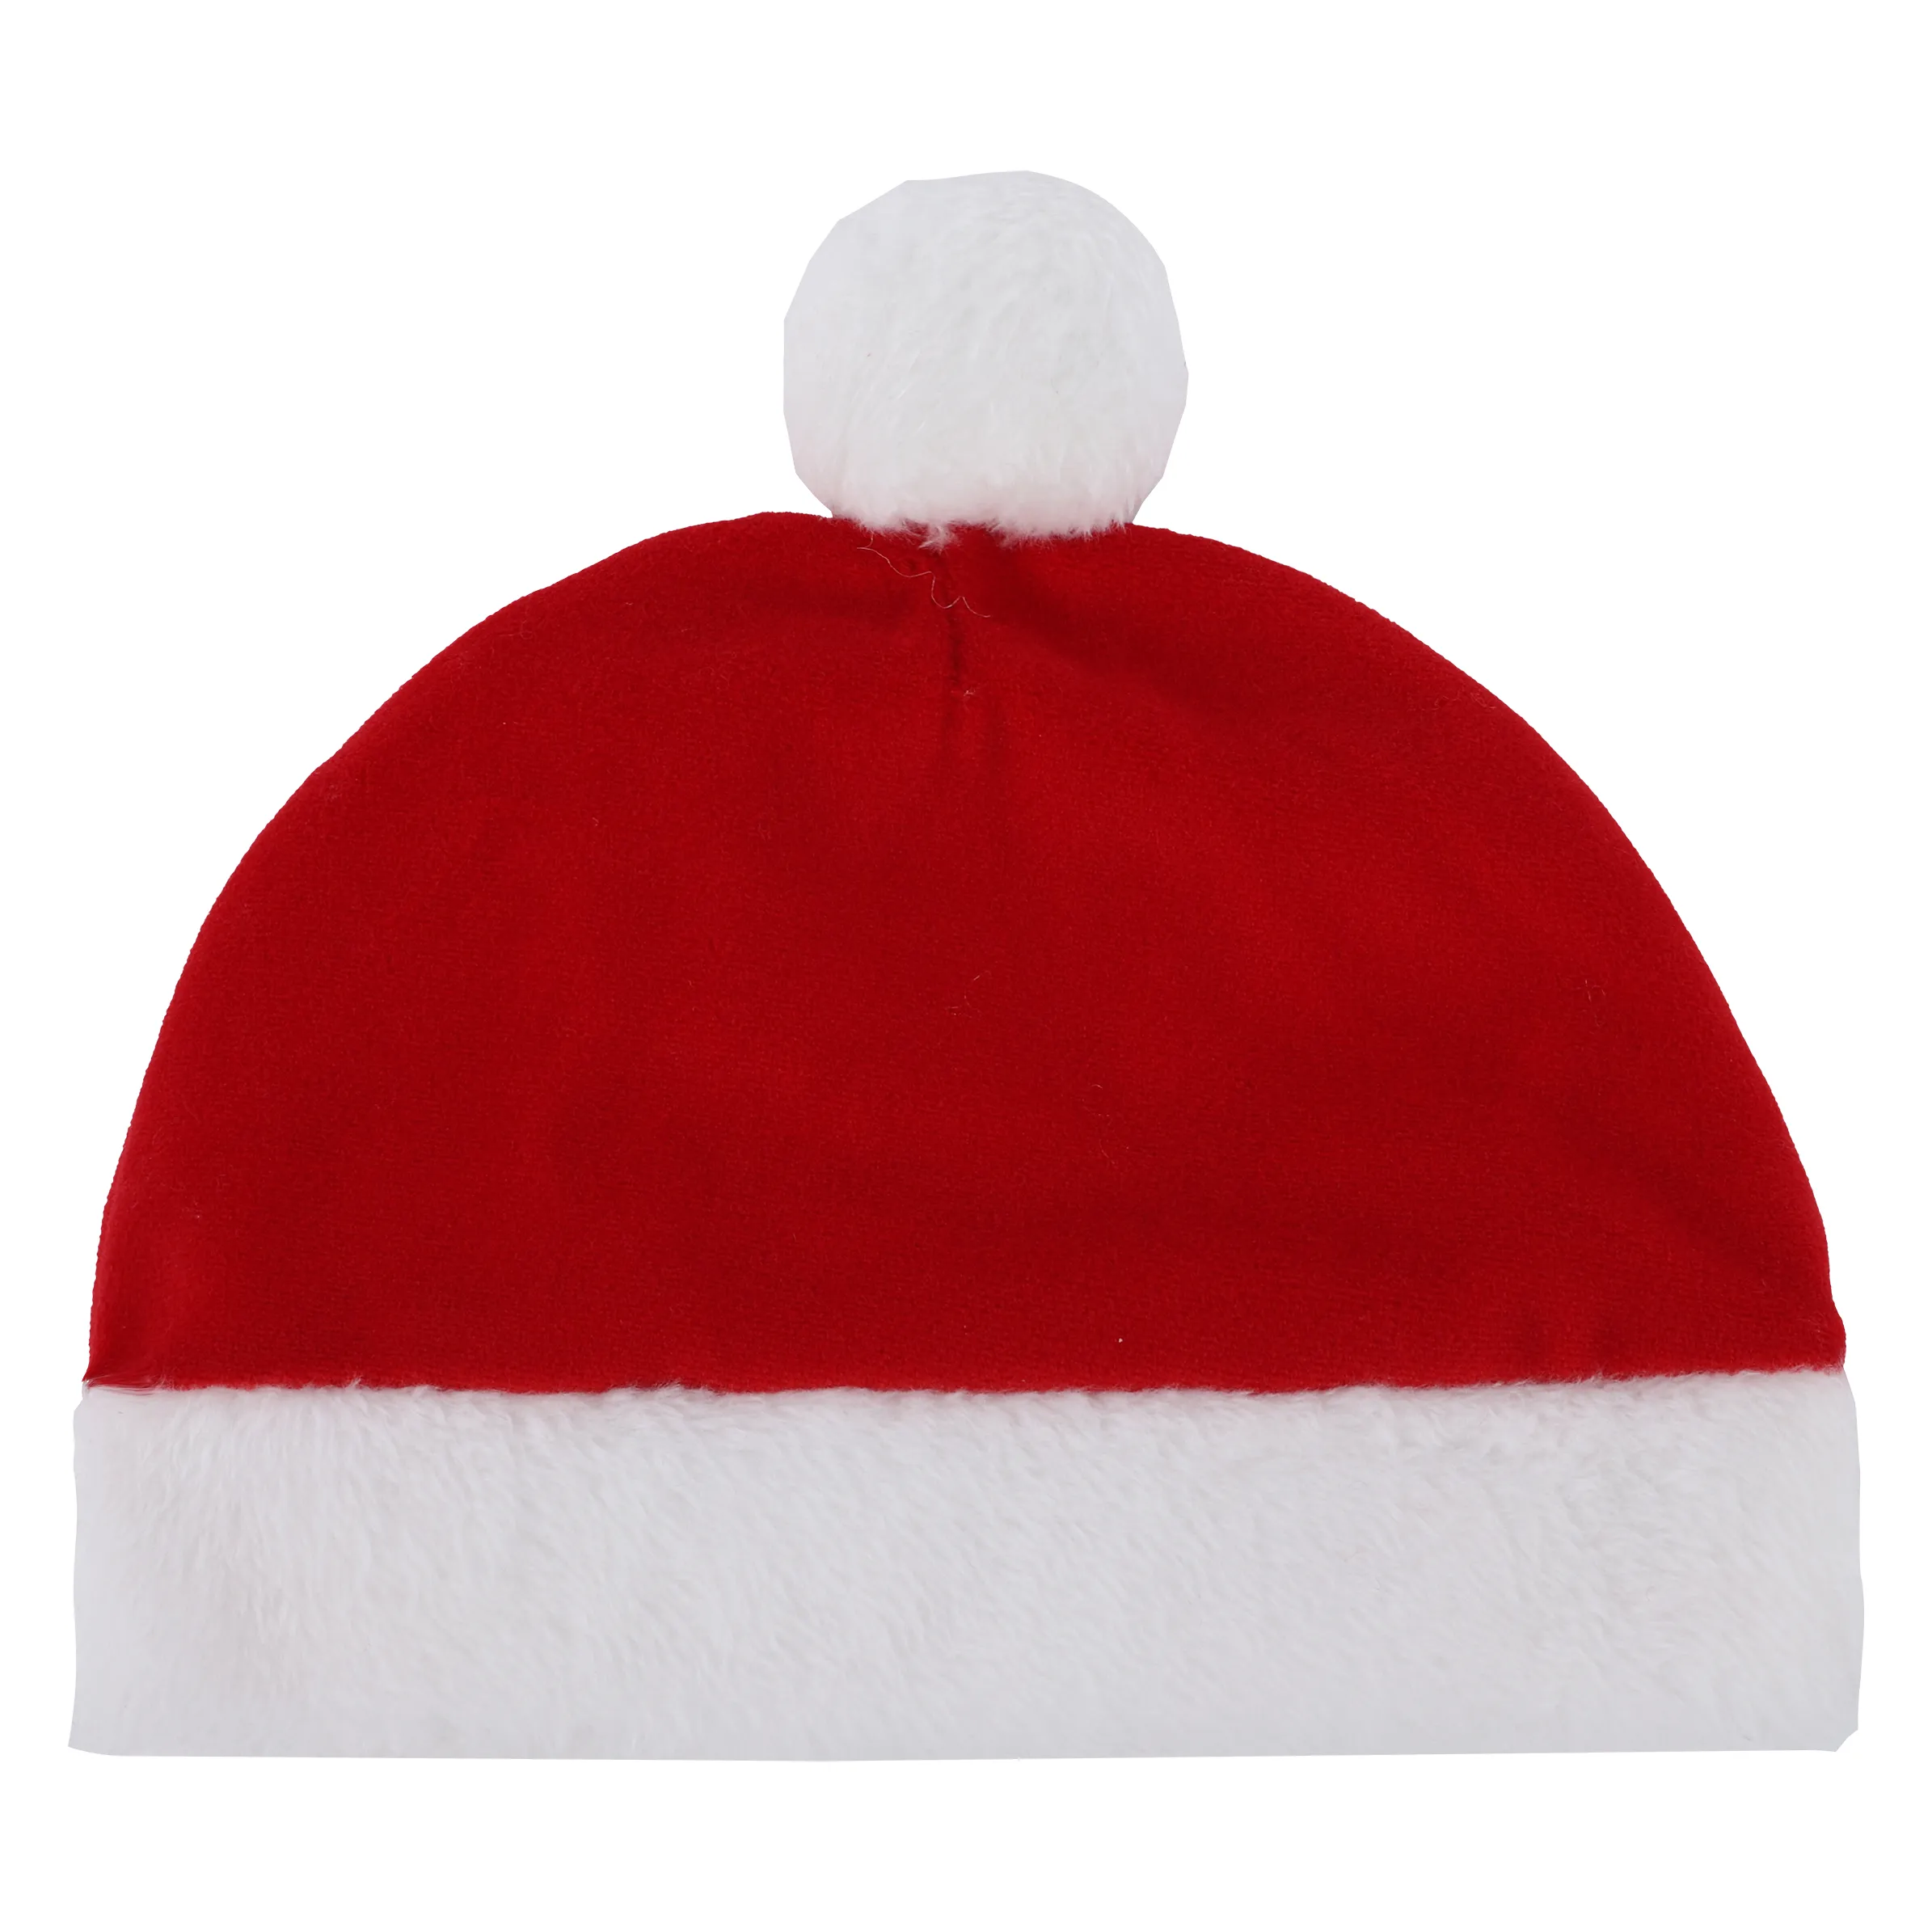 Bubble Gum BU Weihnachtsmütze in rot mit Rot 884313 ROT 2